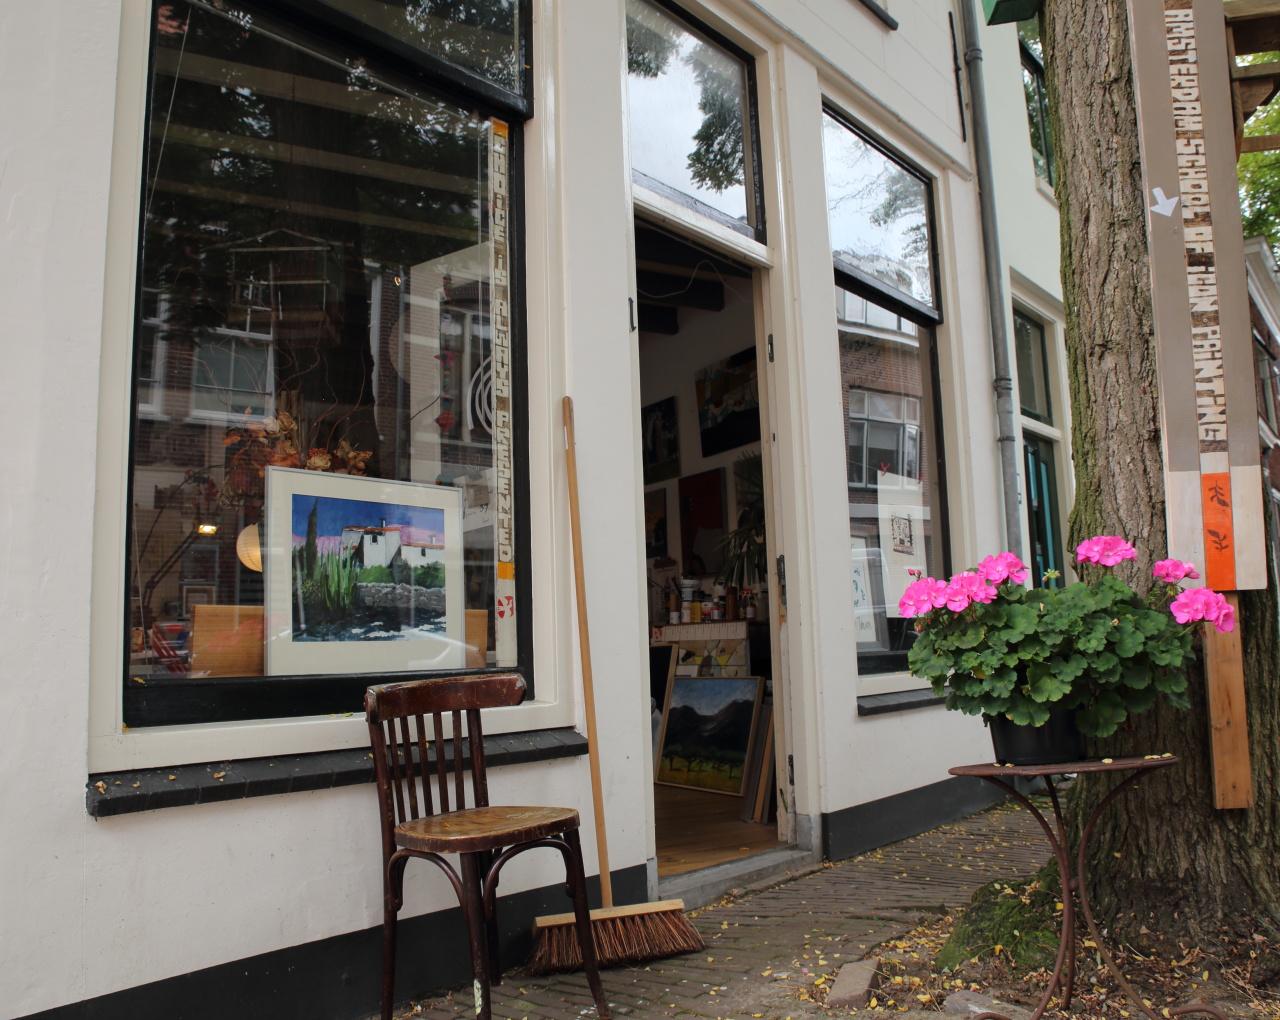 Foto Atelier Ruud Jansen in Haarlem, Winkelen, Wonen & koken - #1